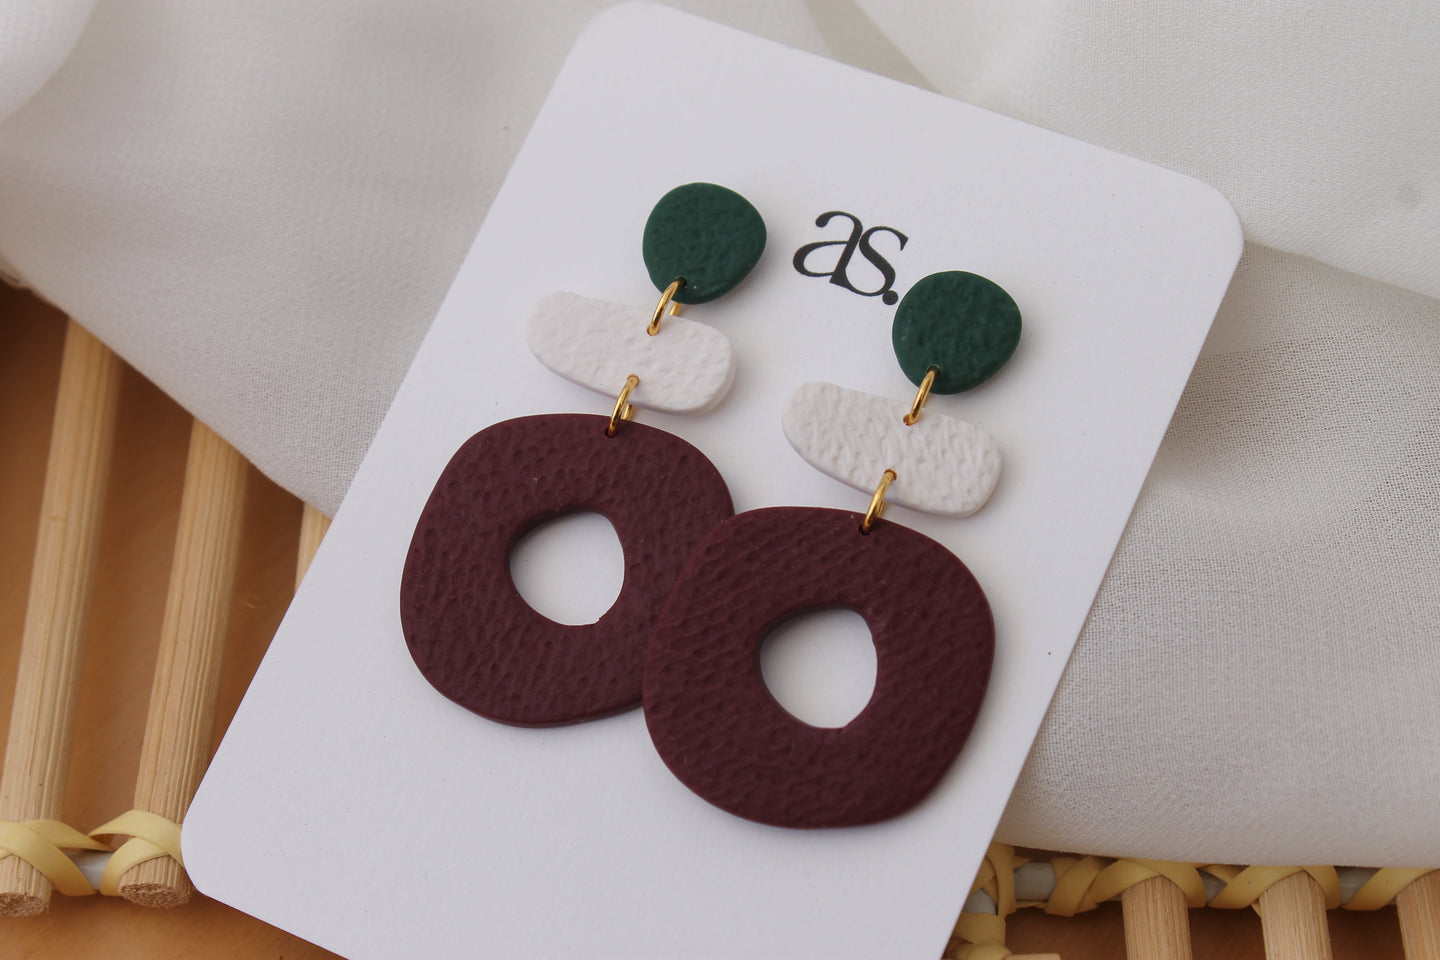 pine green, white, burgundy clay earrings